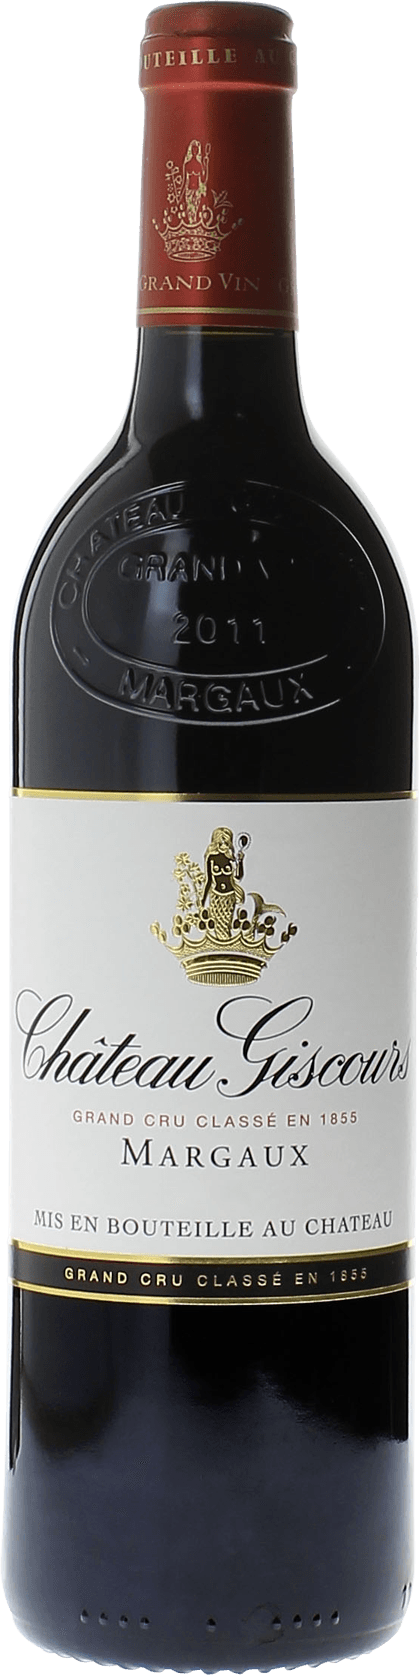 Giscours 1967 3me Grand cru class Margaux, Bordeaux rouge